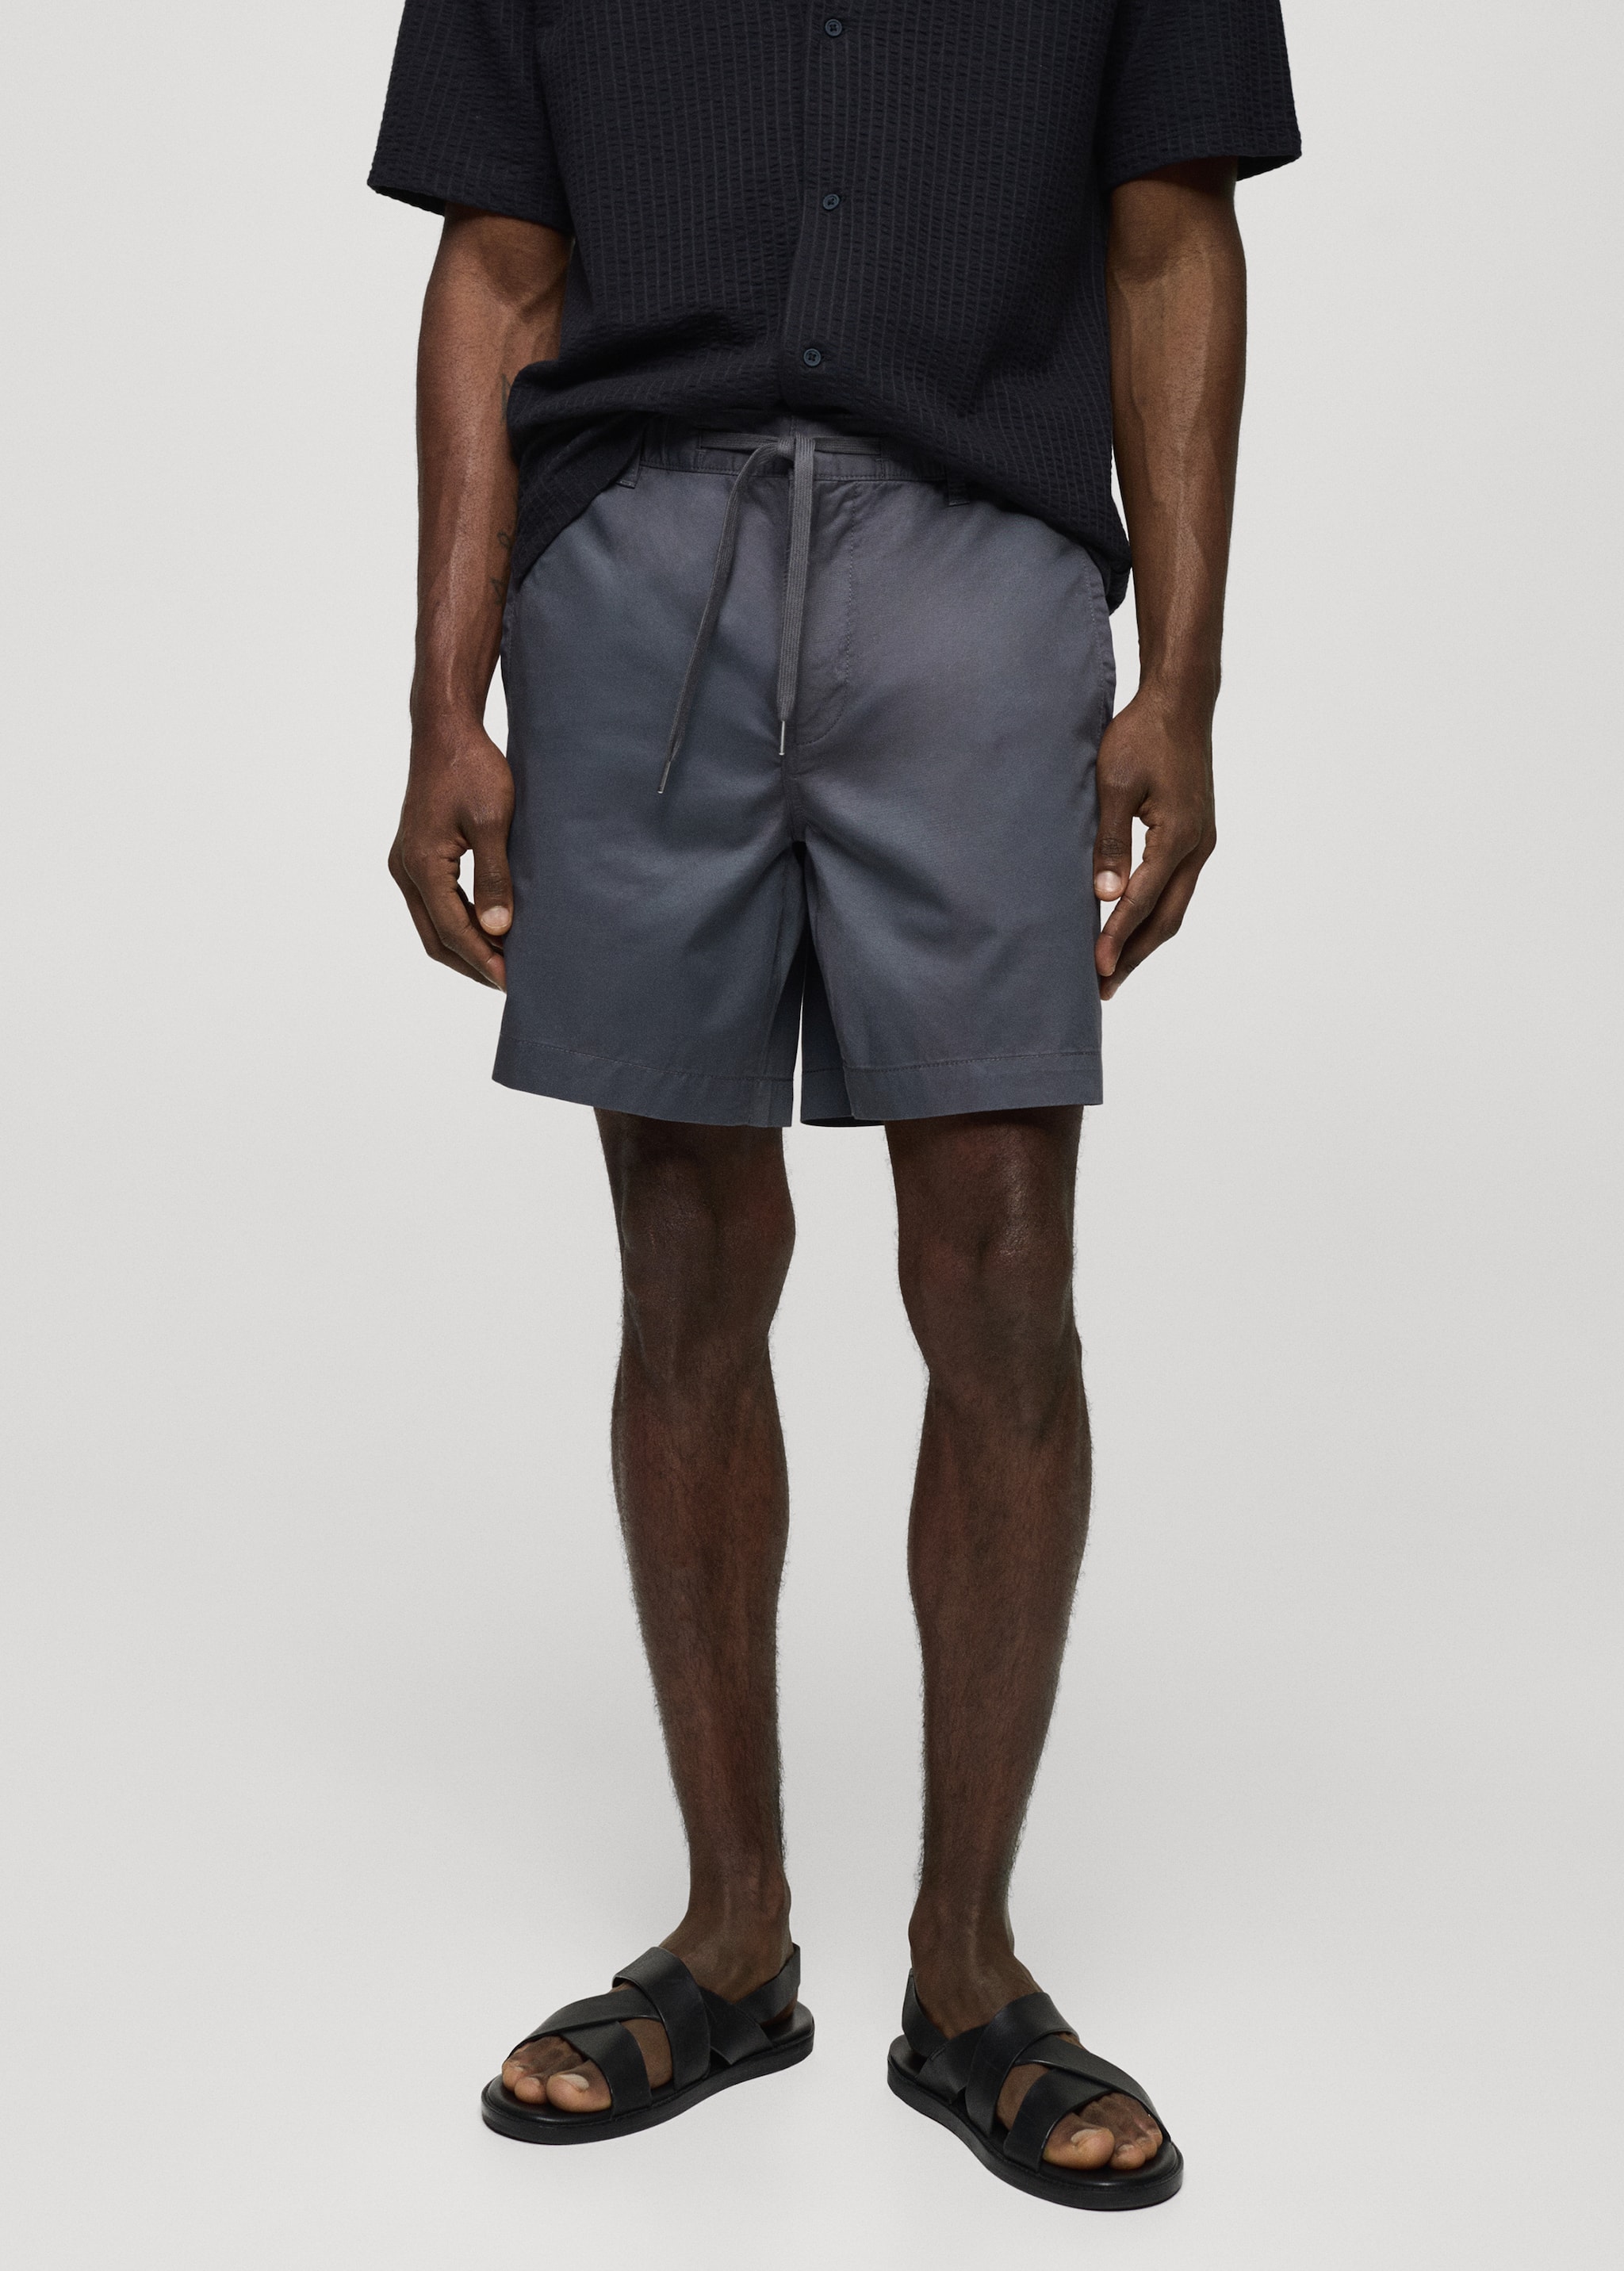 100% cotton drawstring Bermuda shorts - Medium plane